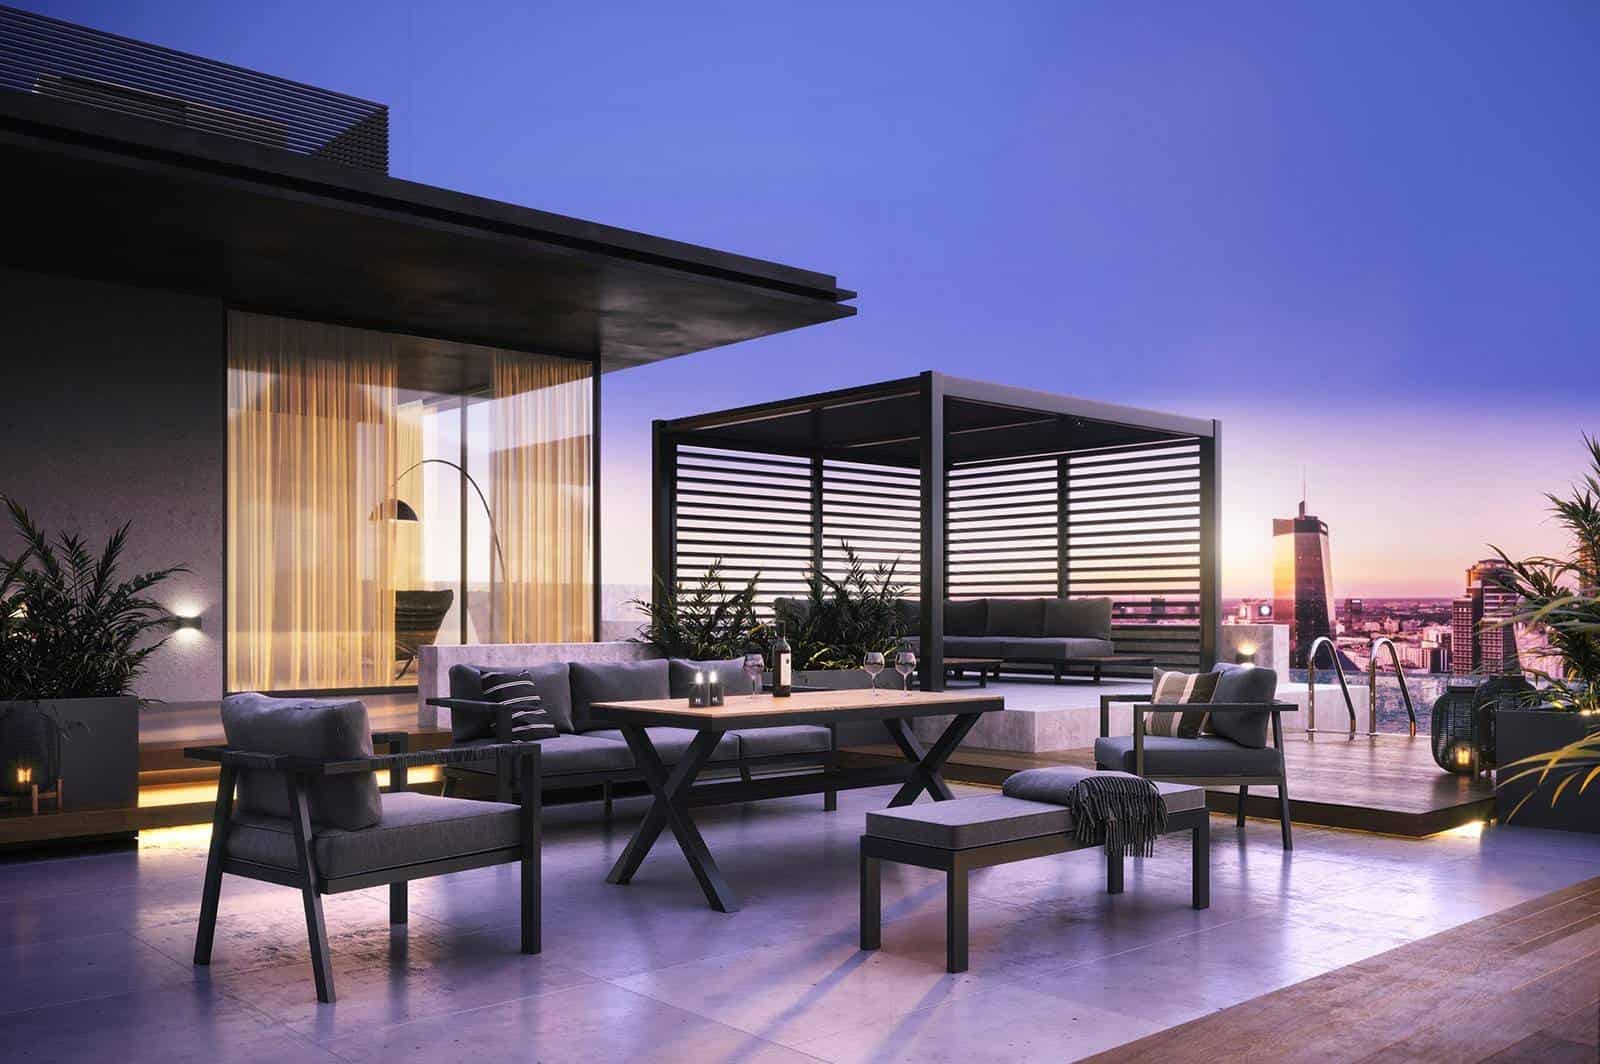 Komplet balkonowy – wybierz wygodne meble wypoczynkowe